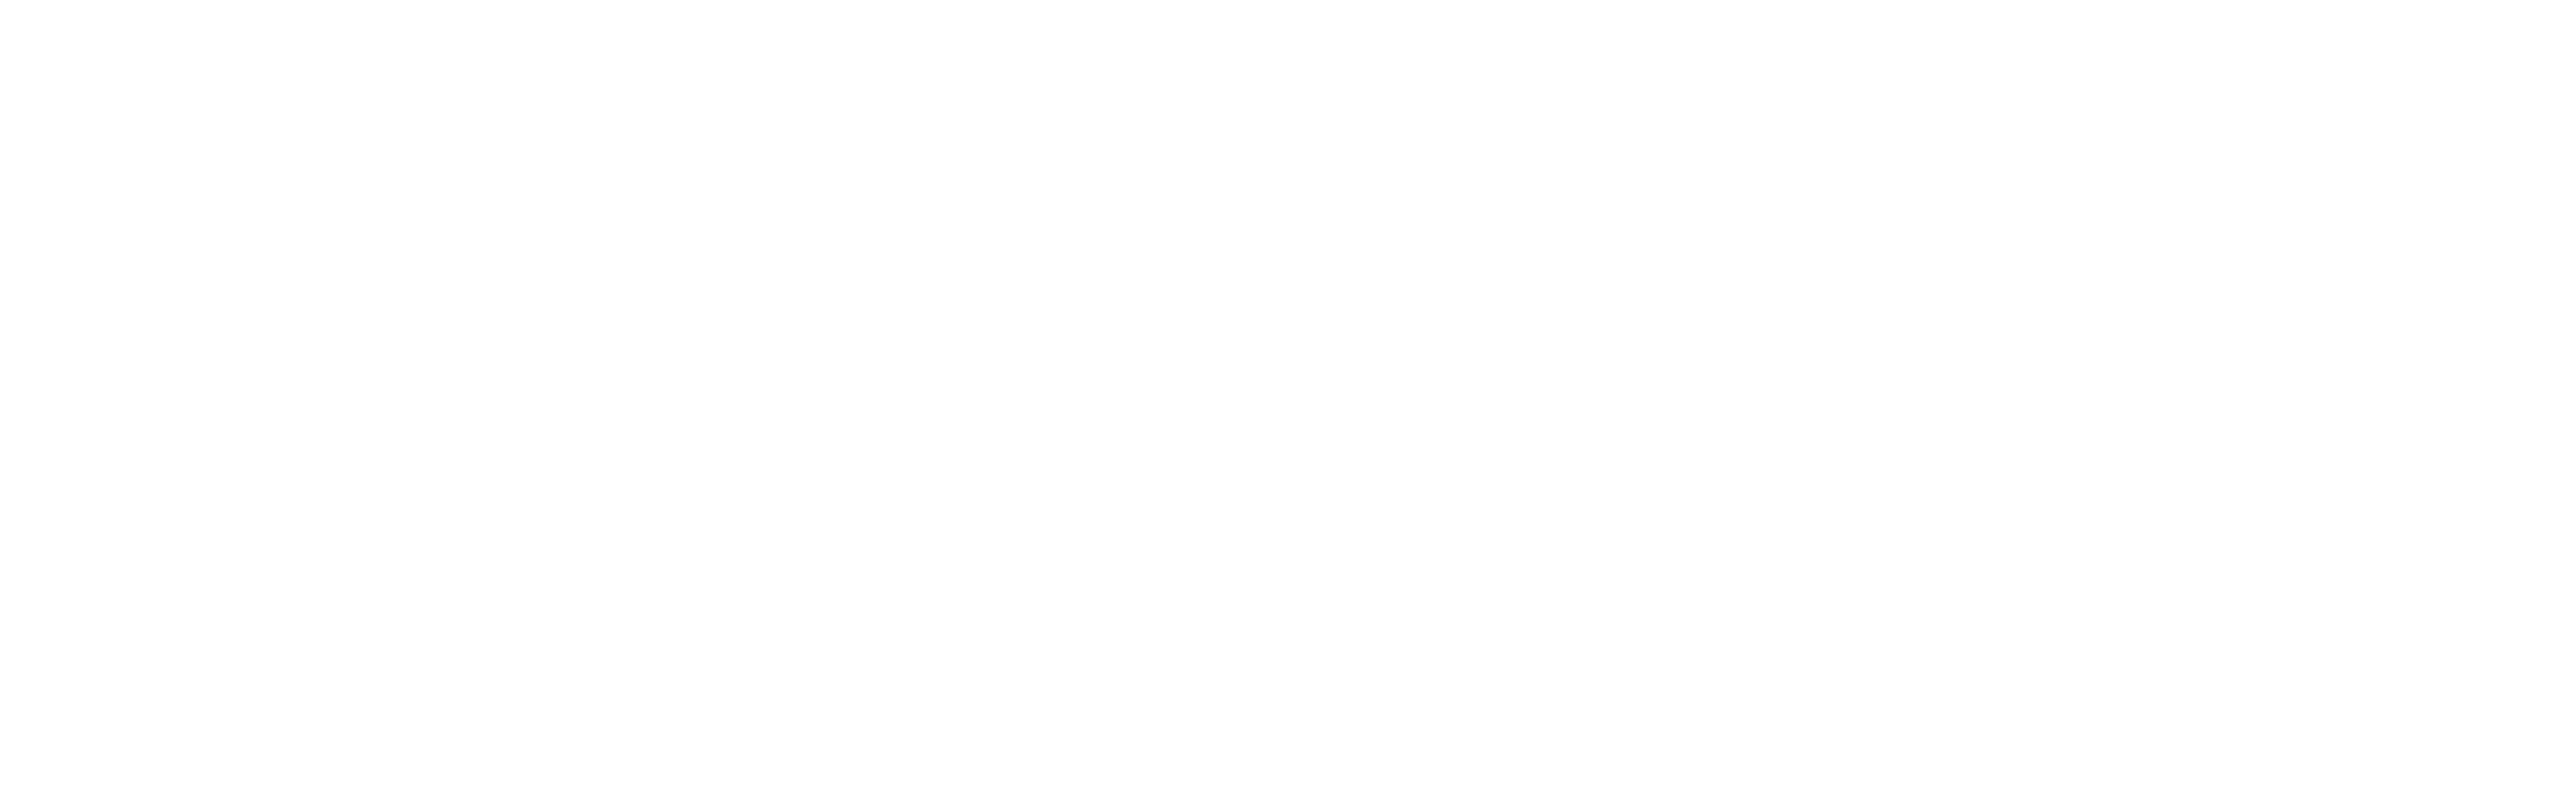 MissionSquare Memorial Scholarship Fund